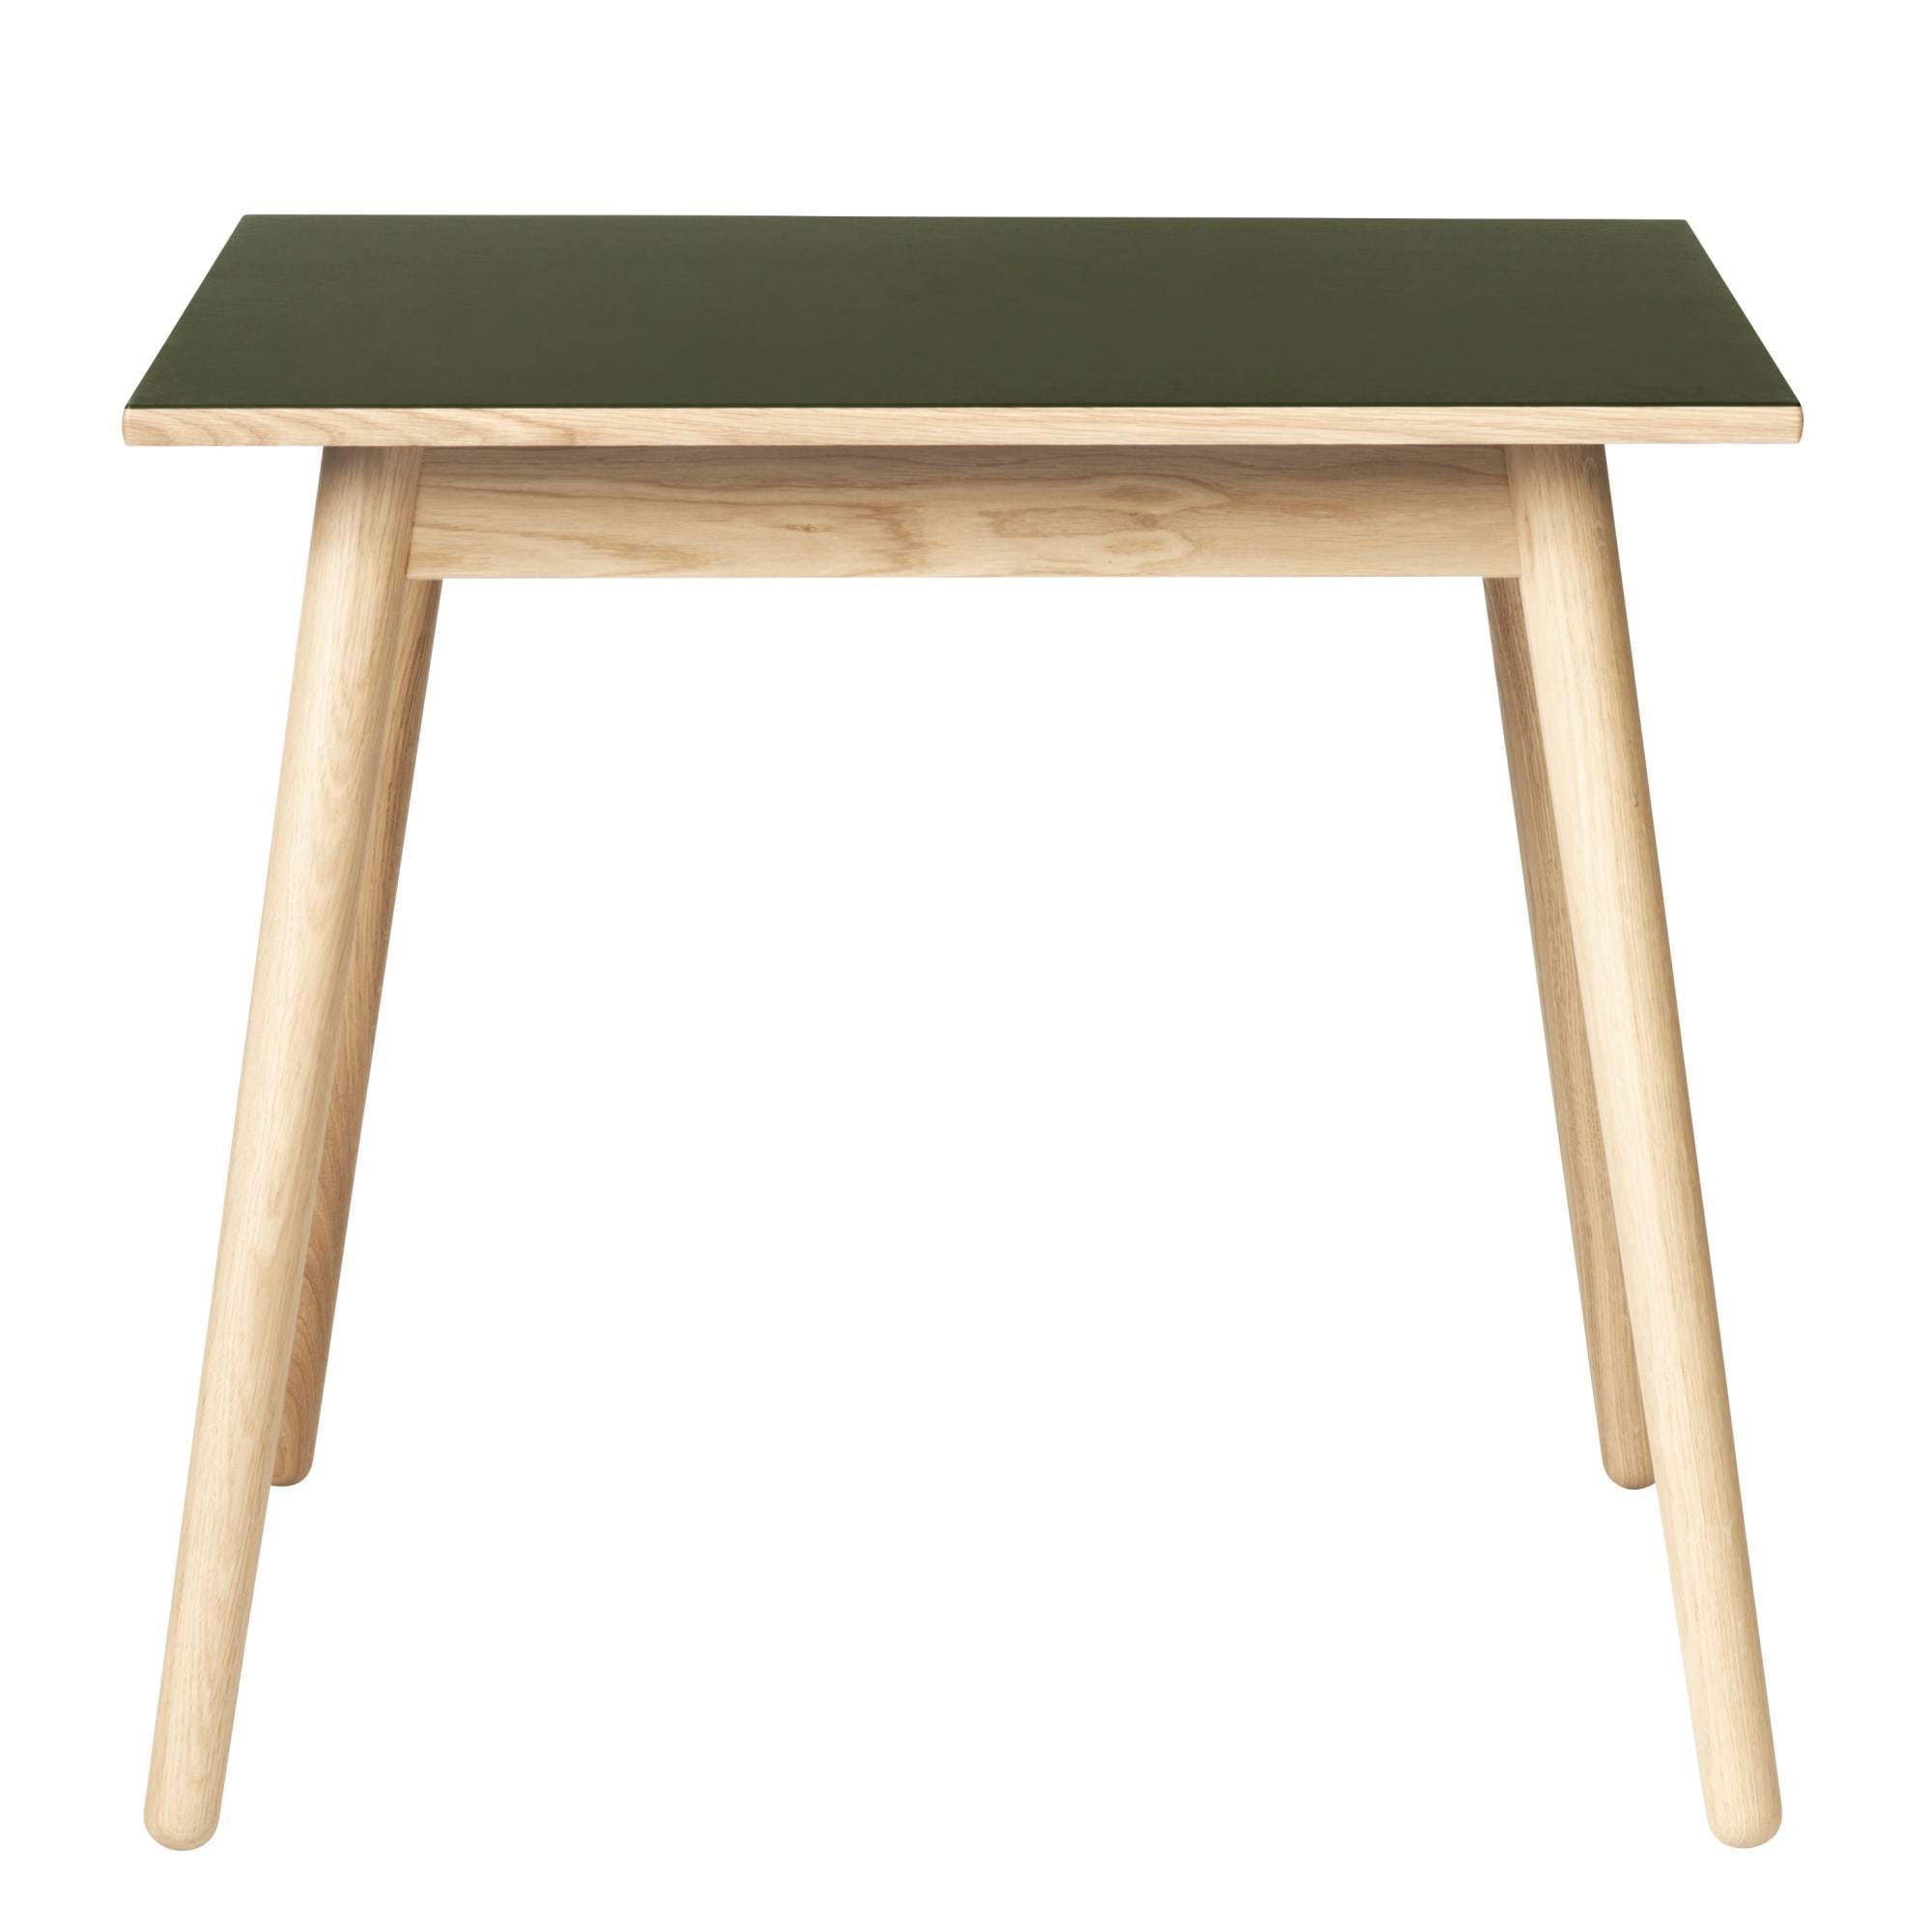 Fdb Møbler C35 Table à manger en chêne, plateau en linoléum olive, 82x82 cm